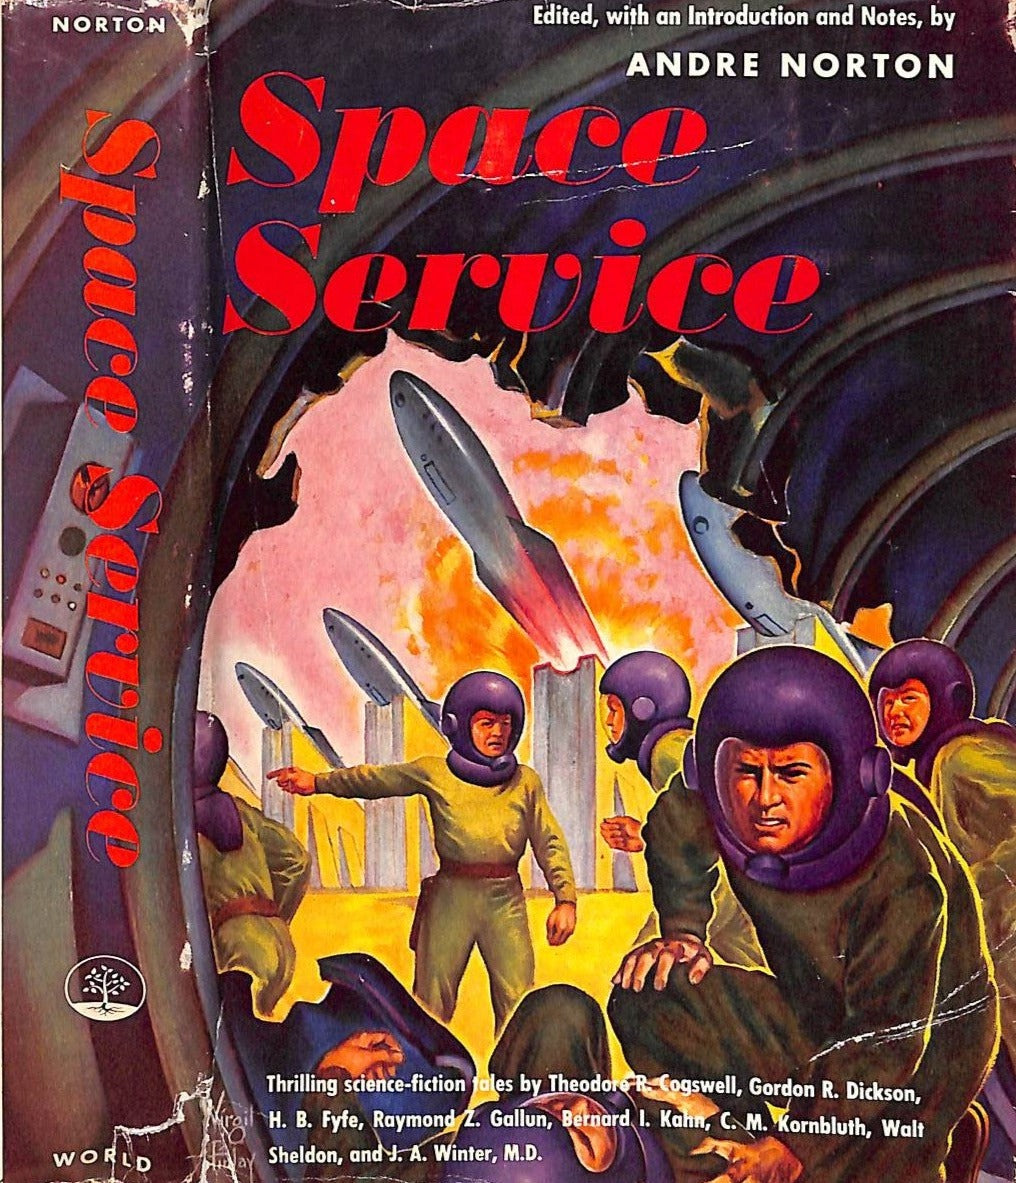 "Space Service" 1953 NORTON, Andre